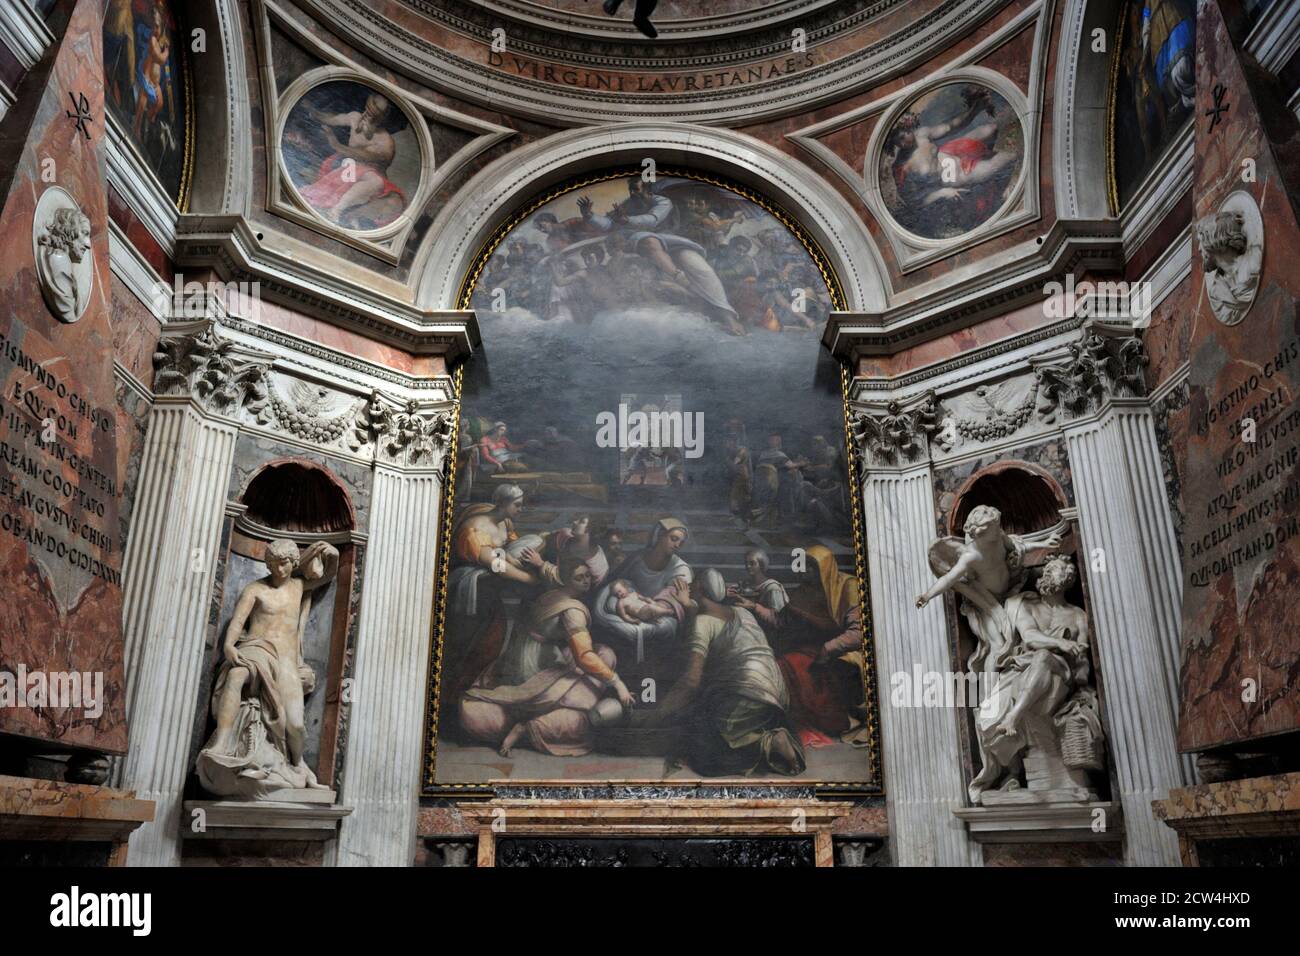 Italy, Rome, Basilica of Santa Maria del Popolo interior, Cappella Chigi, Sebastiano del Piombo painting “Nascita della Vergine” (16th century) Stock Photo